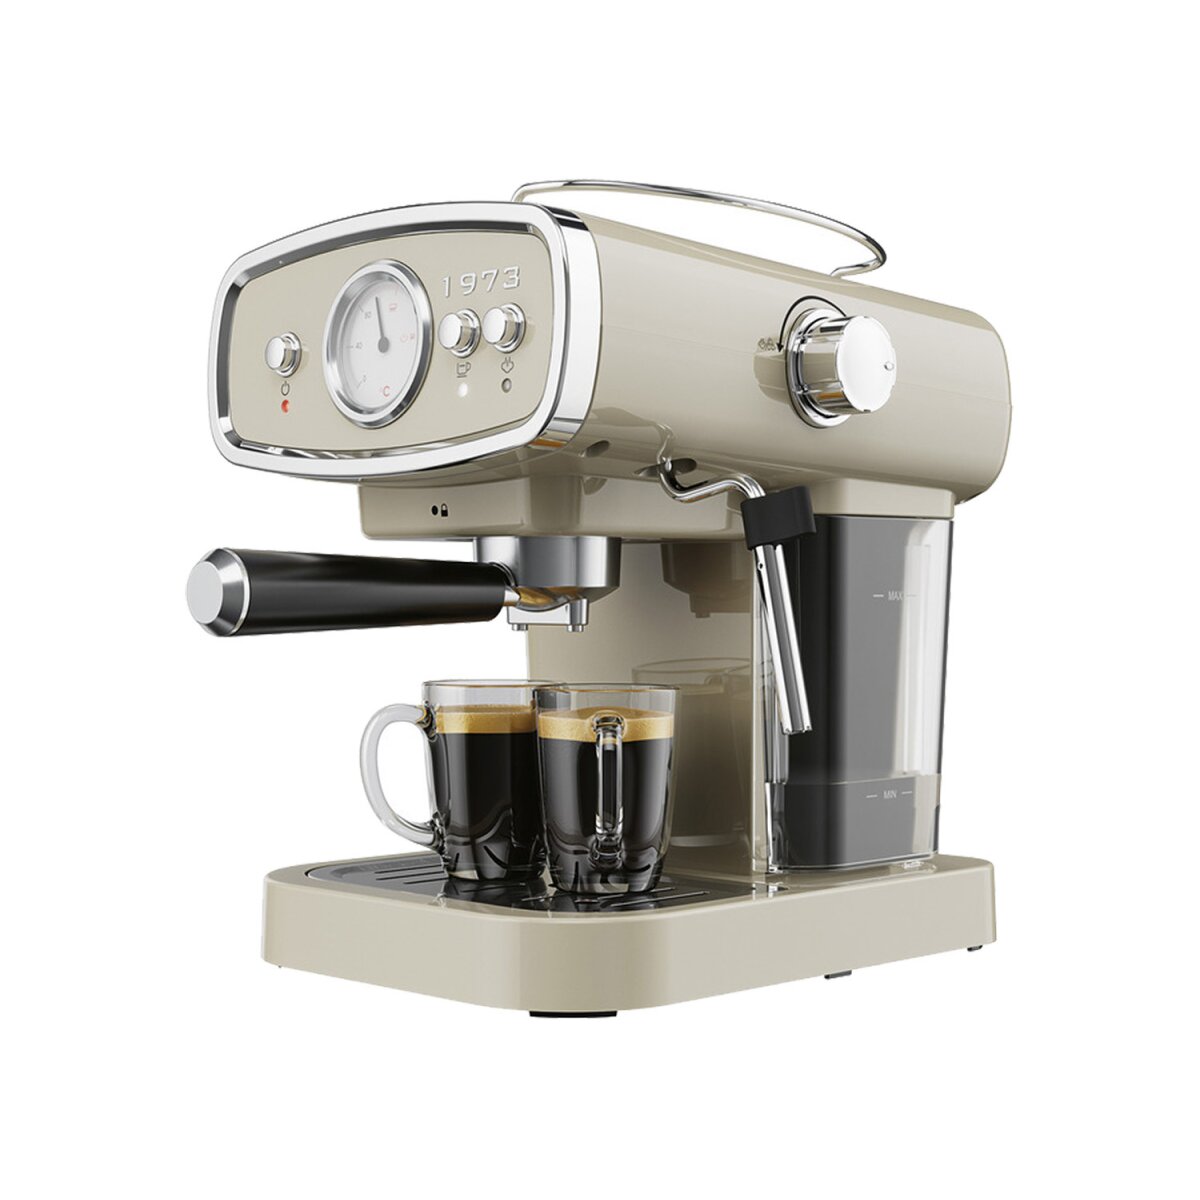 KITCHEN - 1050 A1«, W Espressomaschine 68,99 SILVERCREST® € B-Ware 1050 gut, 2-in-1, »SEML TOOLS